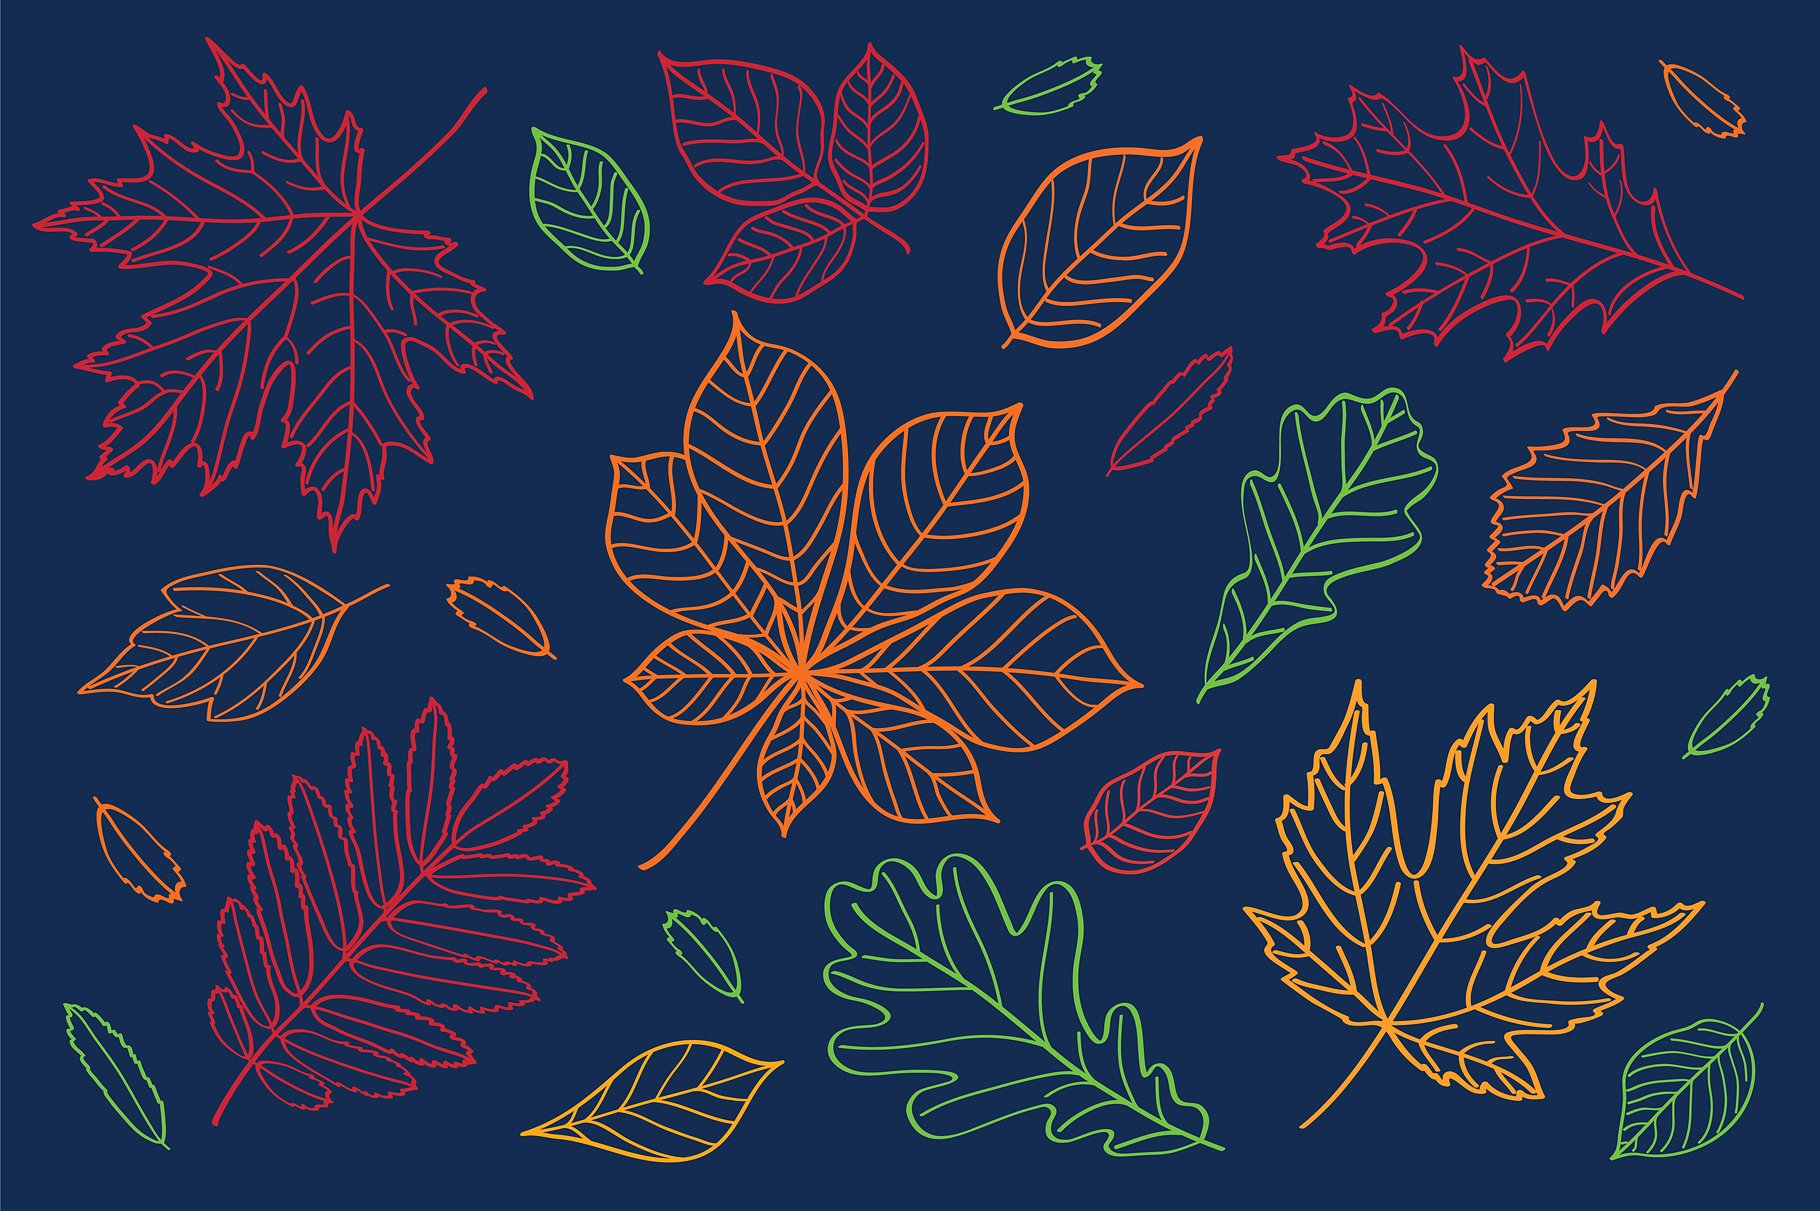 多款手绘叶子元素图案合集 Hand Drawn Leaves Of Different Trees插图7